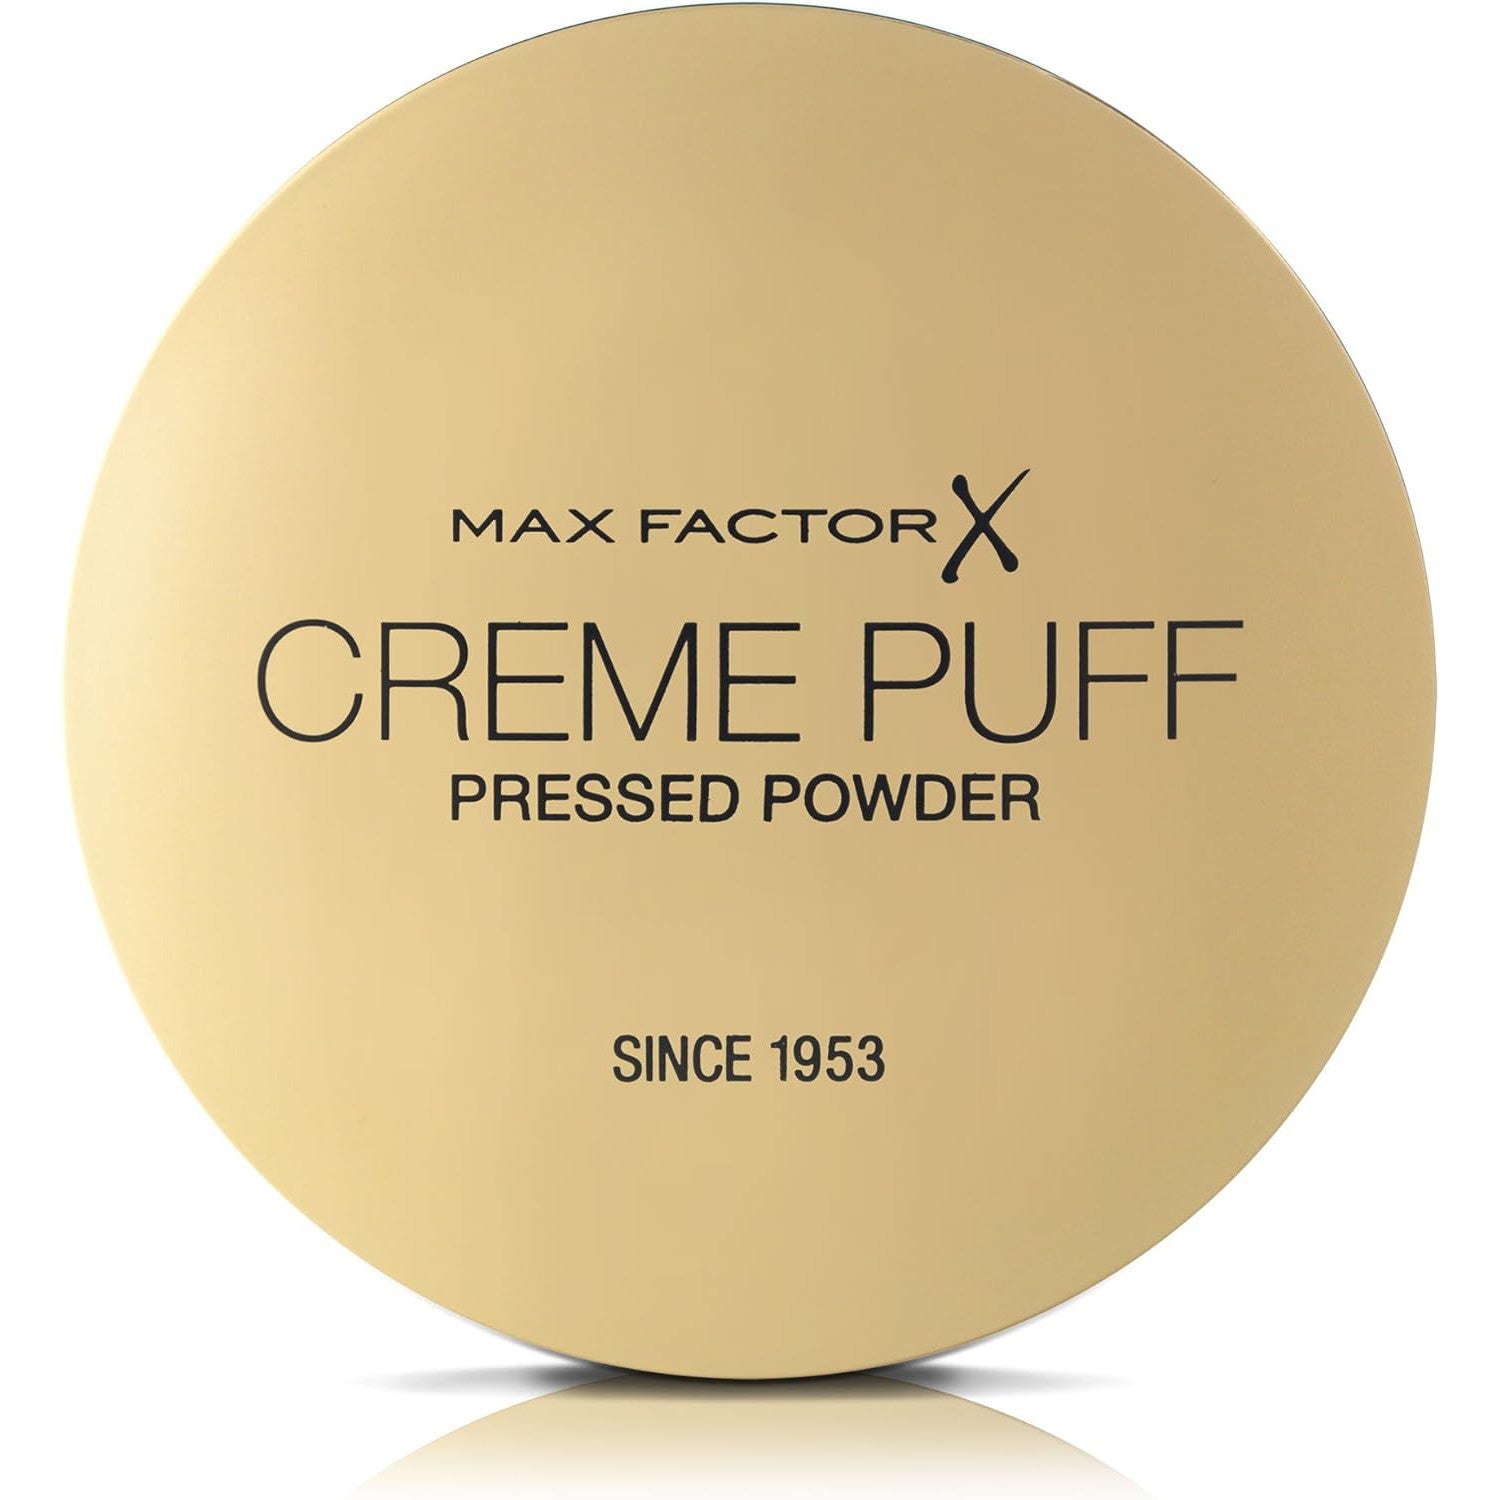 Max Factor Creme Puff 75 Golden